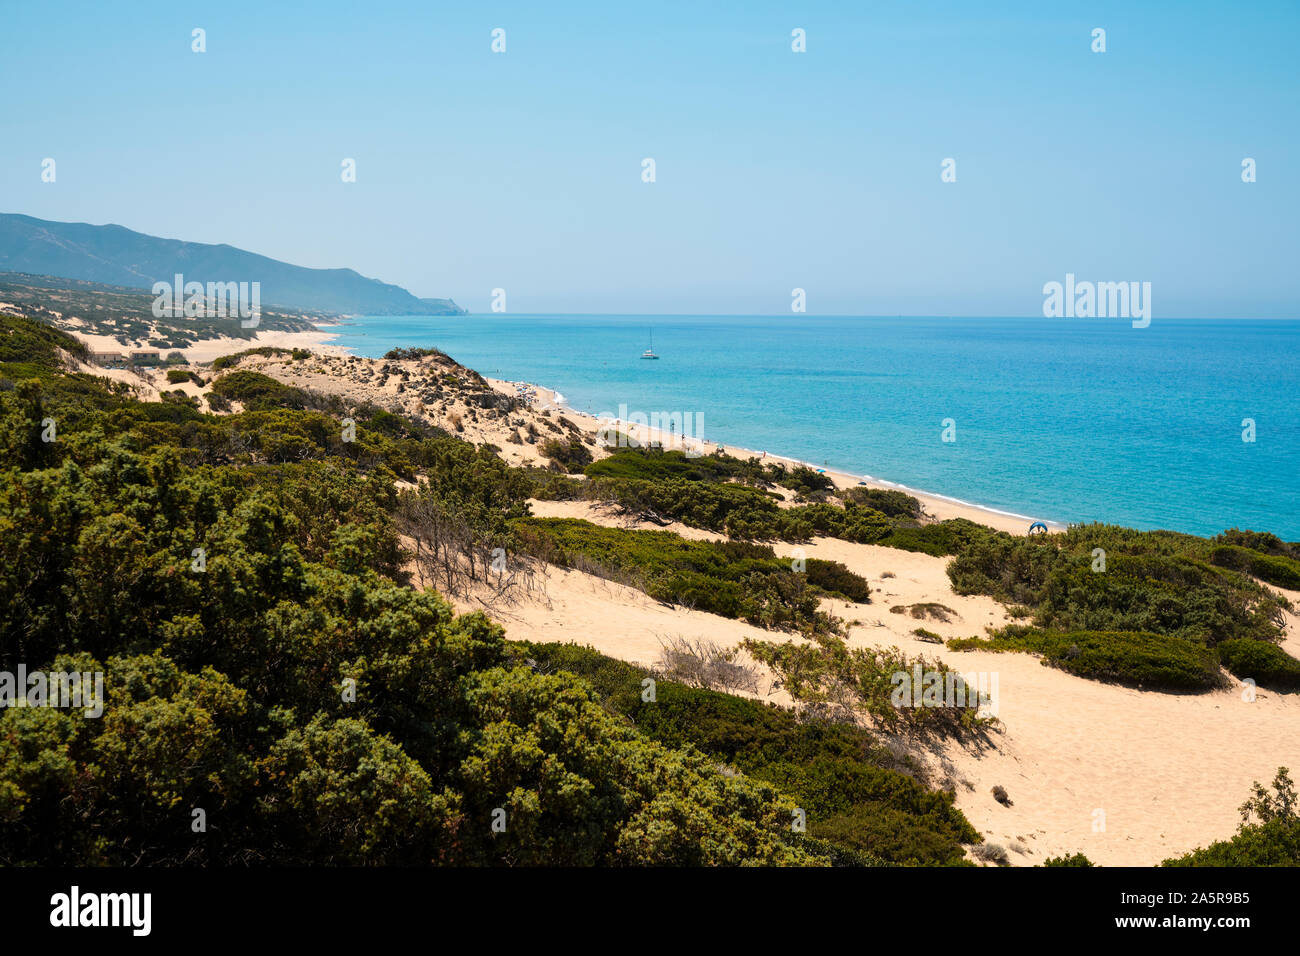 El paisaje de dunas de arena de Spiaggia di PISCINAS Piscinas / playa y dunas de Piscinas Costa Verde en la costa oeste de Cerdeña Italia Europa Foto de stock